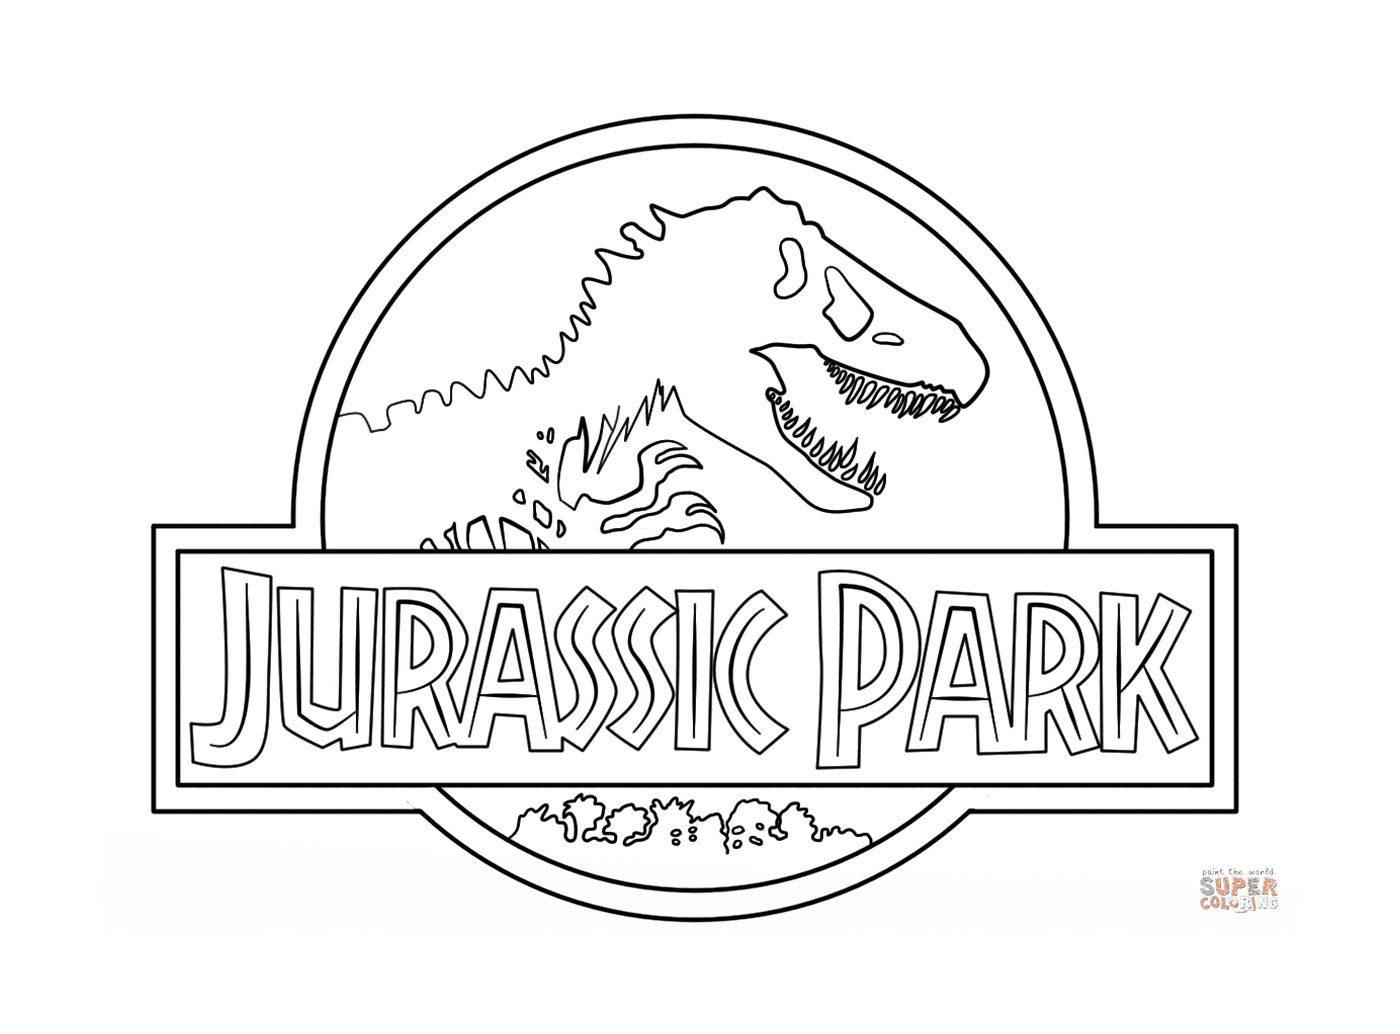  Logo Jurassic Park, die Umwelt vor allem 